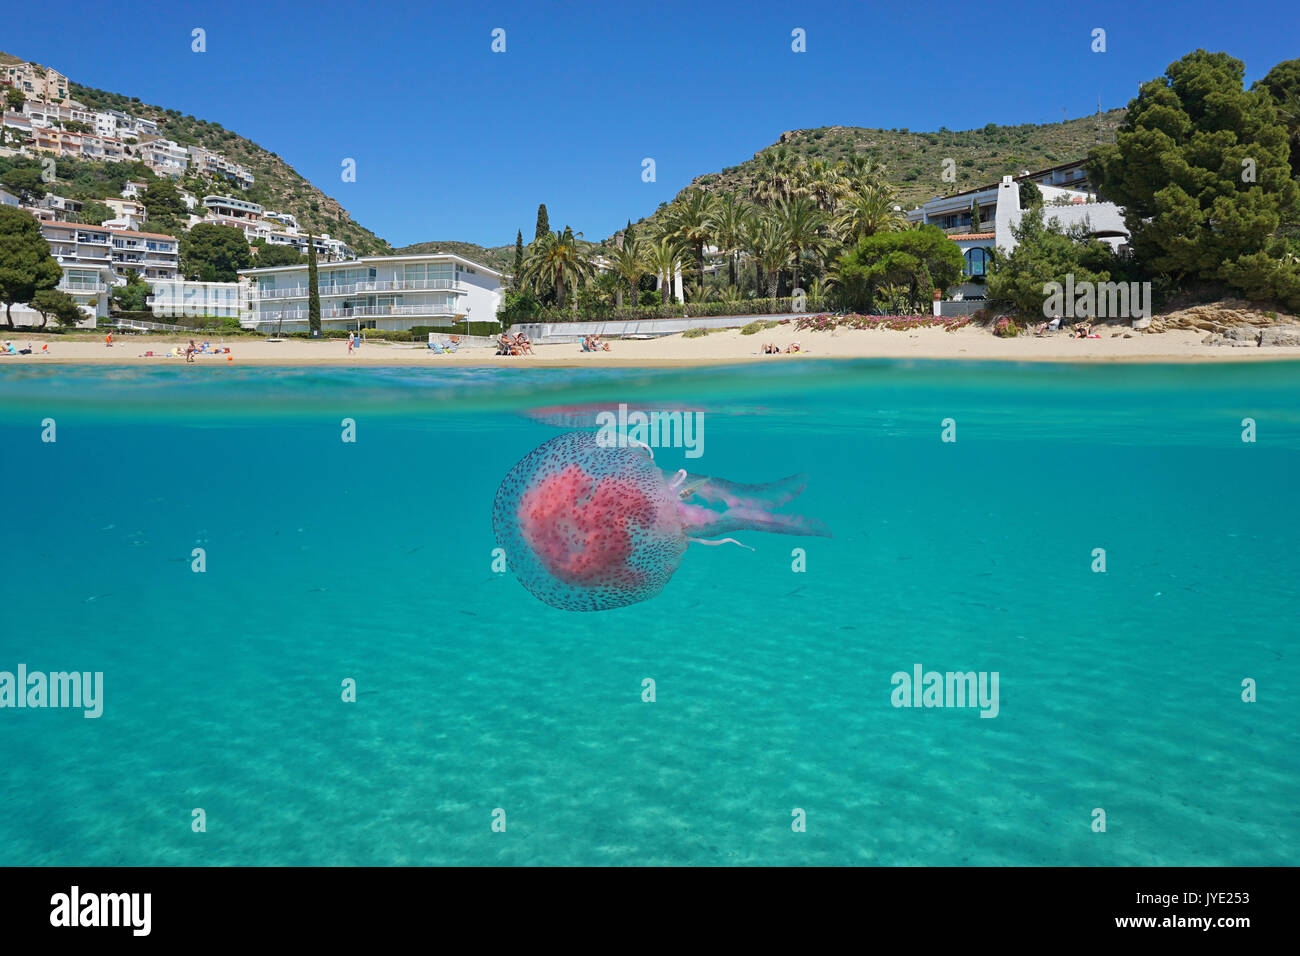 Al di sopra e al di sotto della superficie del mare nei pressi di una spiaggia mediterranea con una medusa subacquea, Spagna, Costa Brava, playa Almadrava, rose, Girona, Catalogna Foto Stock